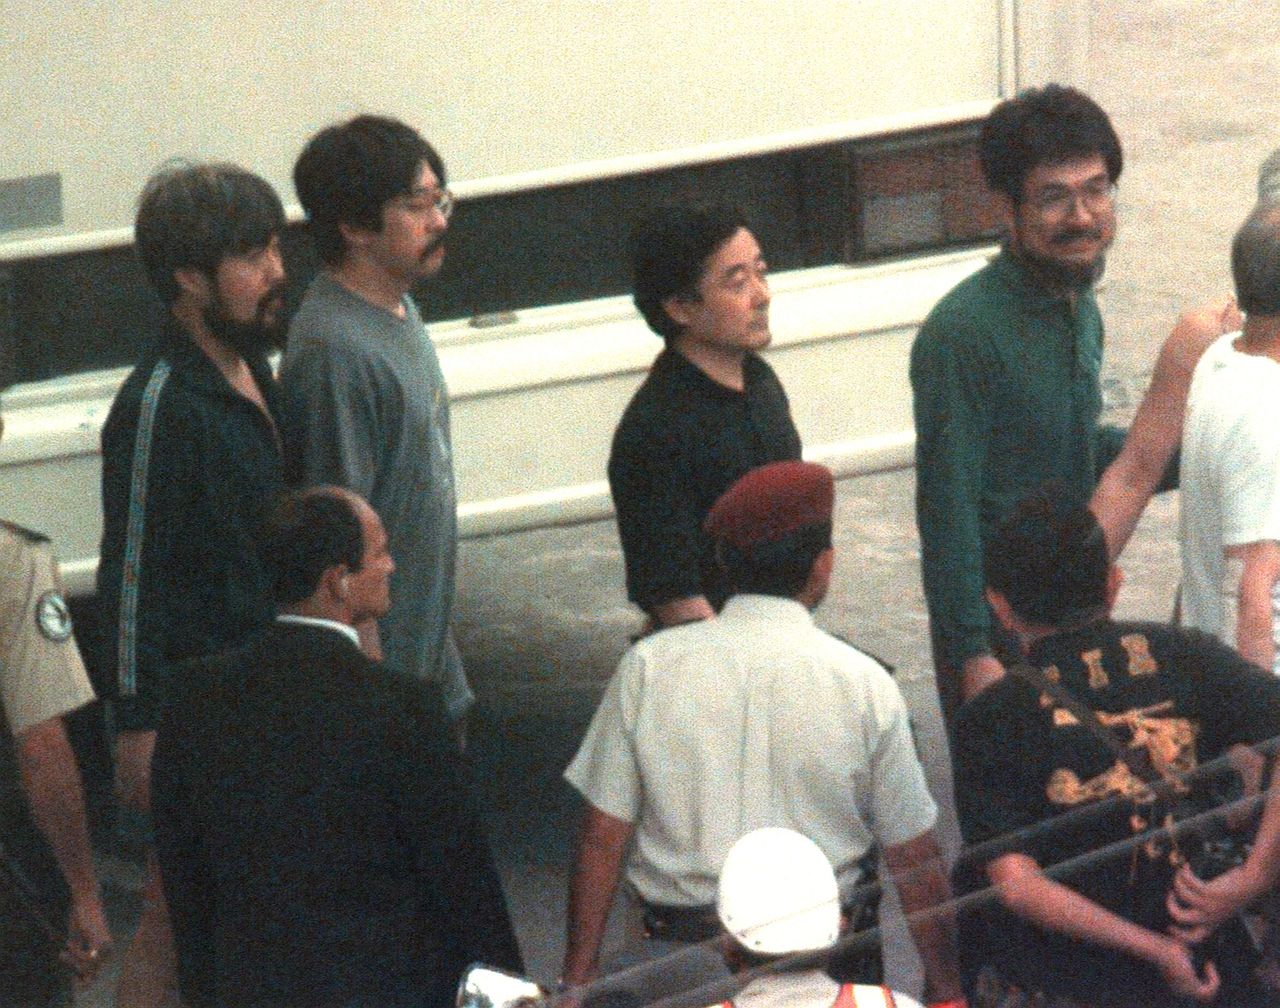 Los rehenes japoneses, con rostros llenos de alivio, justo después de su rescate. El hombre del centro de la imagen, con camisa negra, es Ogura - 22 de abril de 1997, Lima, Perú (Jiji Press)